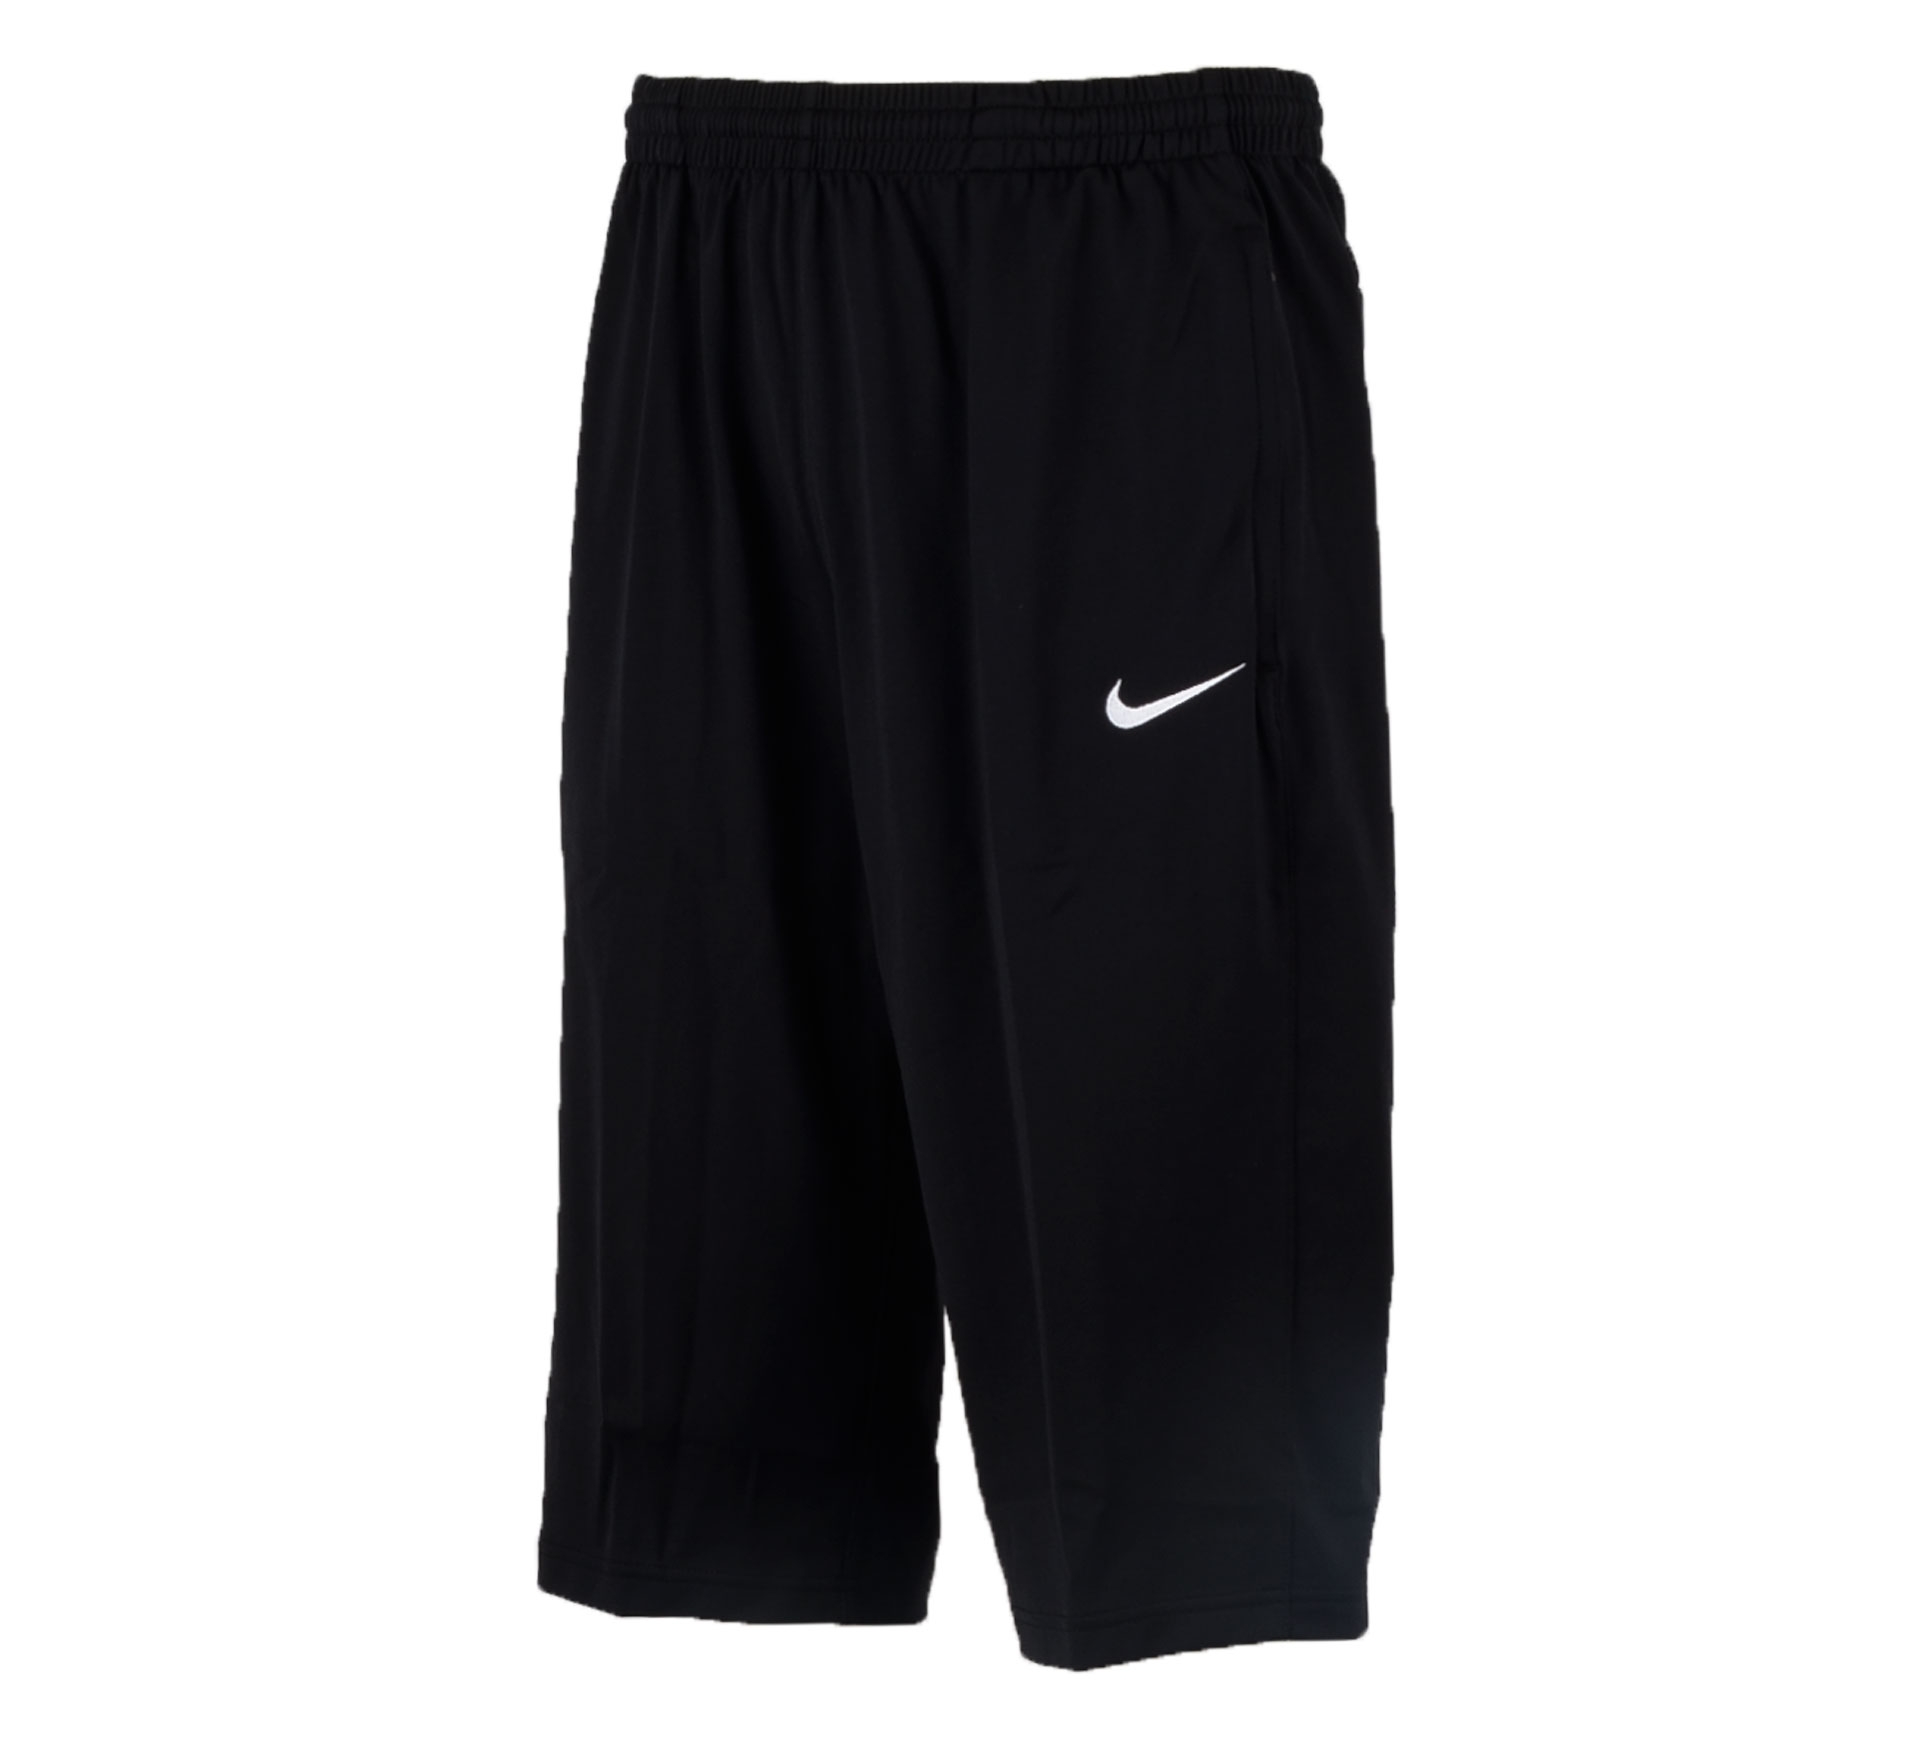 Nike Libero 3/4 Knit Trainingsbr... laagste prijs? Vergelijk hier